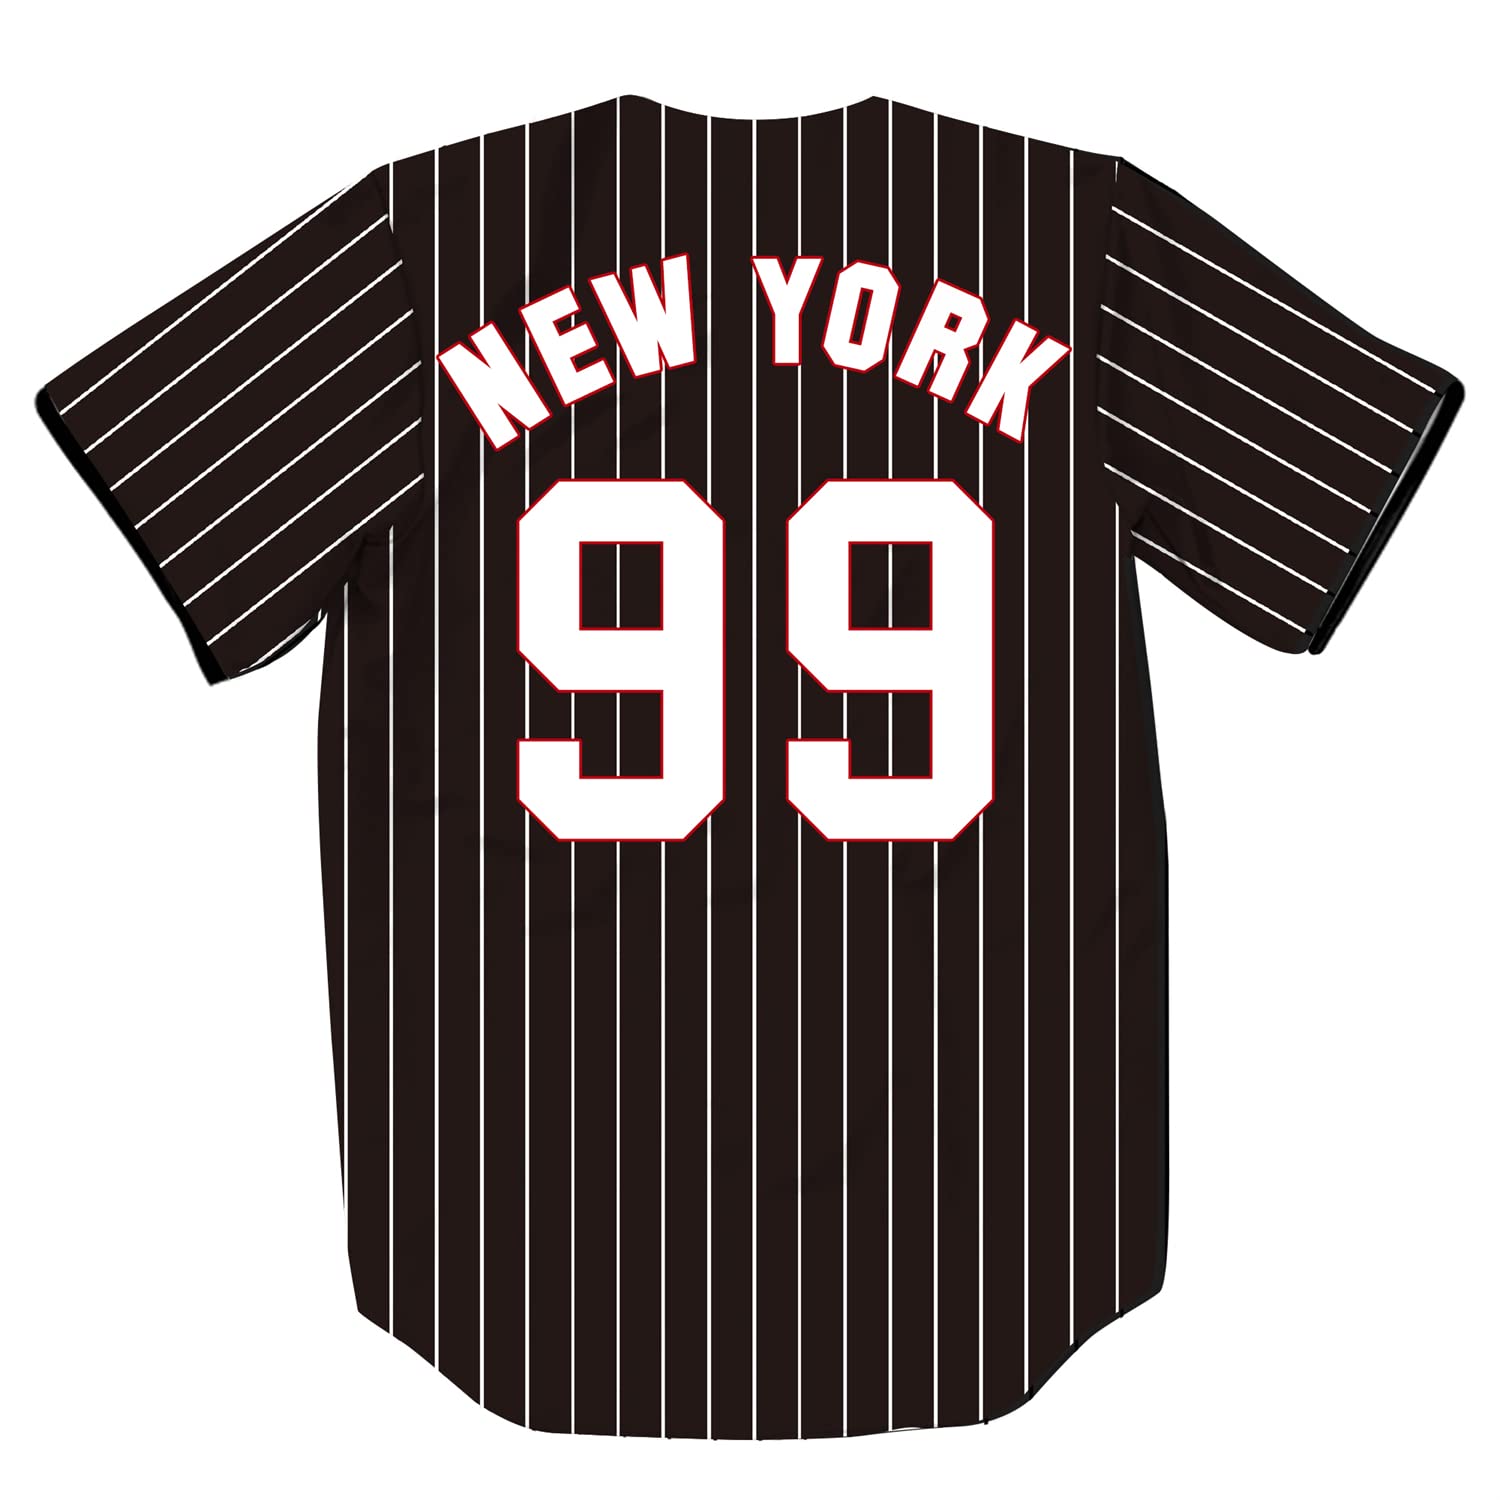  TIFIYA New York 99 Stripes Printed Baseball Jersey NY